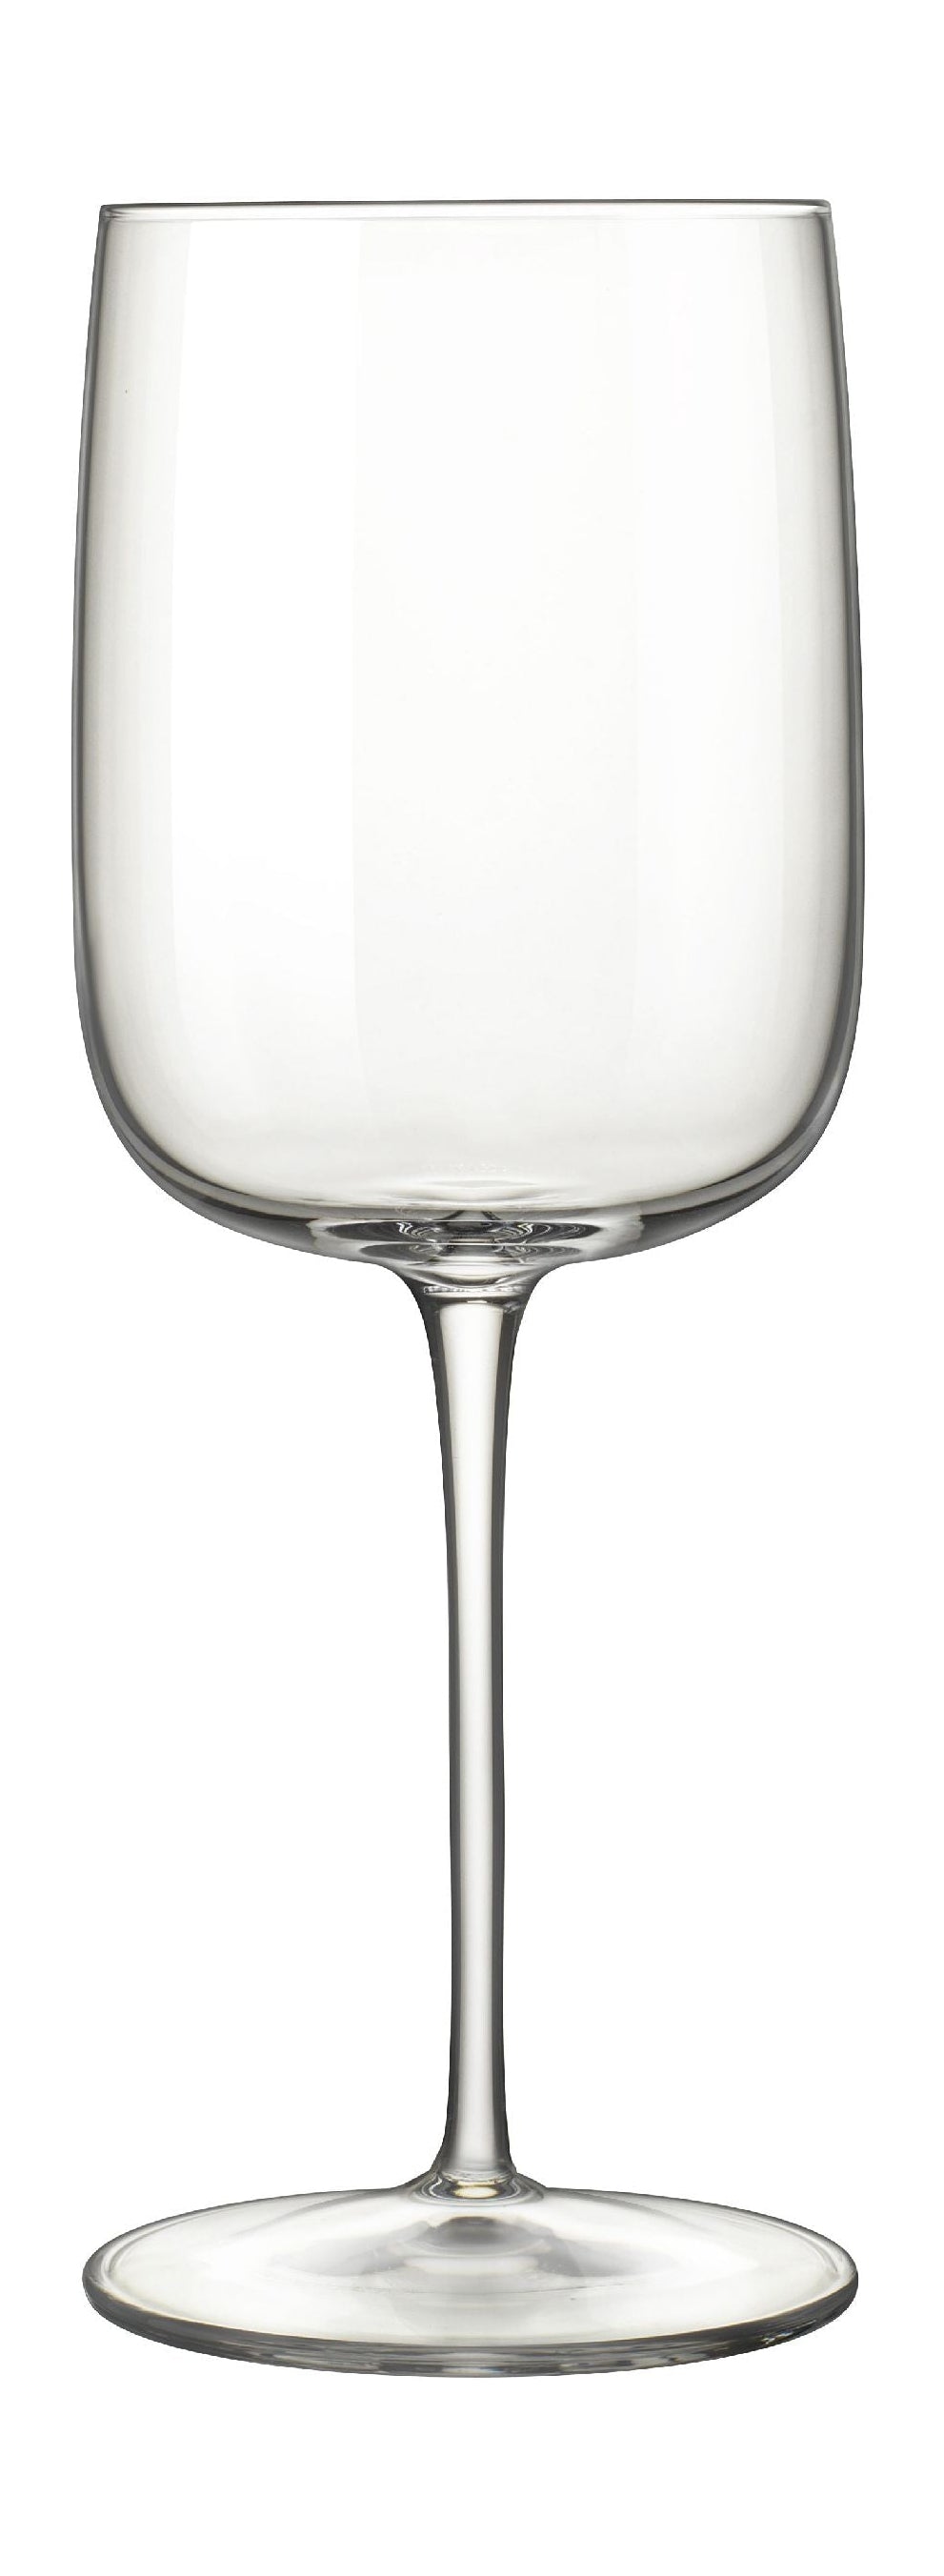 Luigi Borolia Vinalia Verre de vin blanc 45 CL 6 PCS.